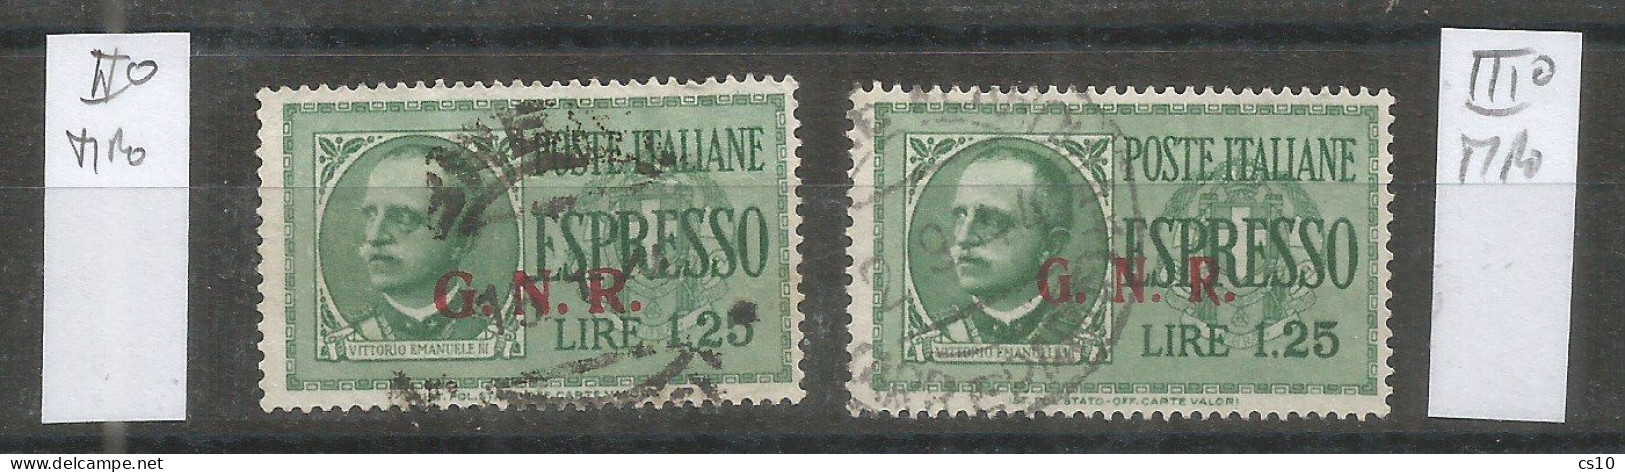 Italia Rep.Sociale Emissioni Guardia Naz. Repubblicana - Espresso L.1,25 USATO  II° Tipo + III° Tipo - Lotti E Collezioni